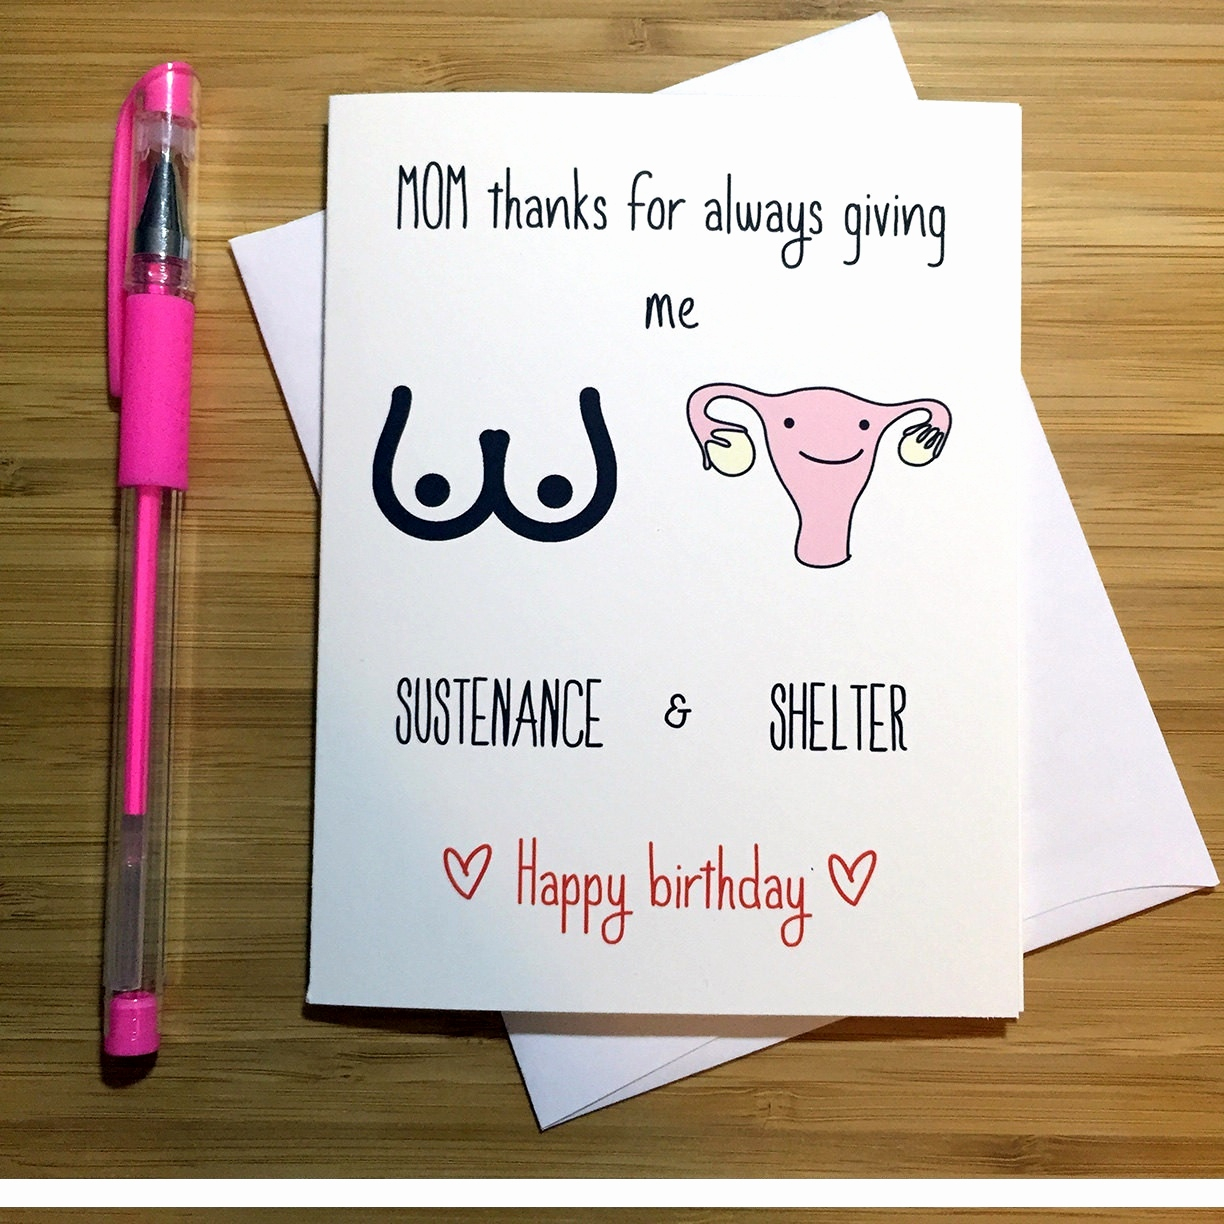 Creative Ideas For A Birthday Card Creative Birthday Card Ideas For Best Friend Awesome Handmade